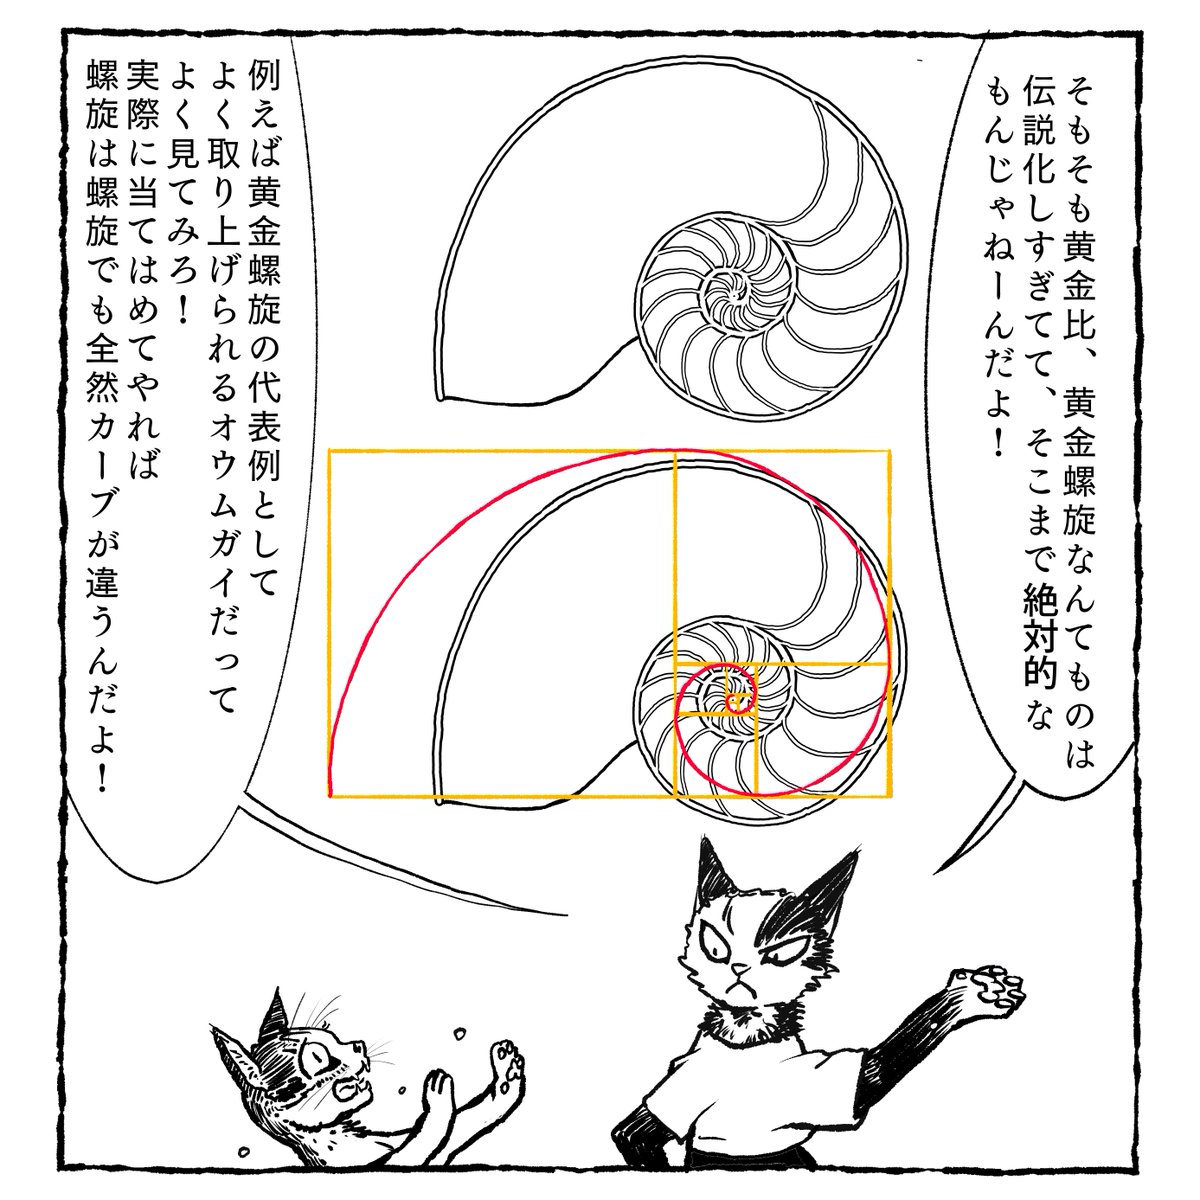 マンガ技術猫マンガ『マンガの必殺技辞典』
第30語「黄金螺旋の実際 」
黄金螺旋の描き方、使い方、そして神話のように語られてしまっている黄金比の真実とは?
https://t.co/05ZaVDLfgO 
#コミチ #縦スクマンガ 